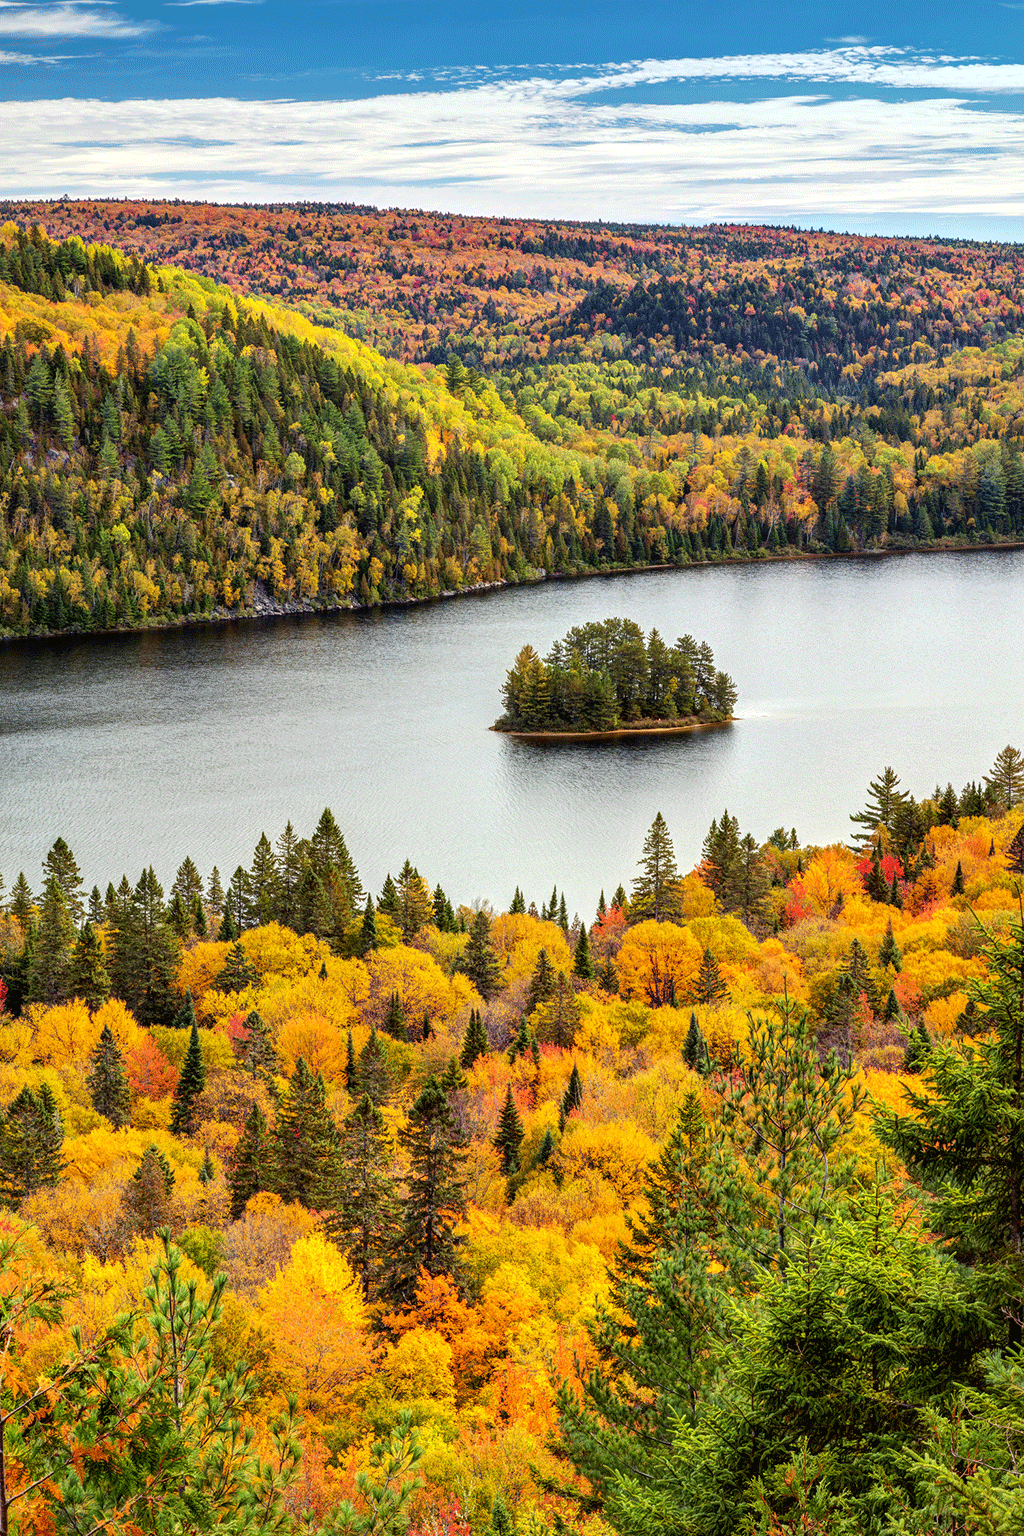 Île dans une rivière avec des forêts des deux côtés d'un plan d'eau. Les arbres changent de couleur à l'automne.